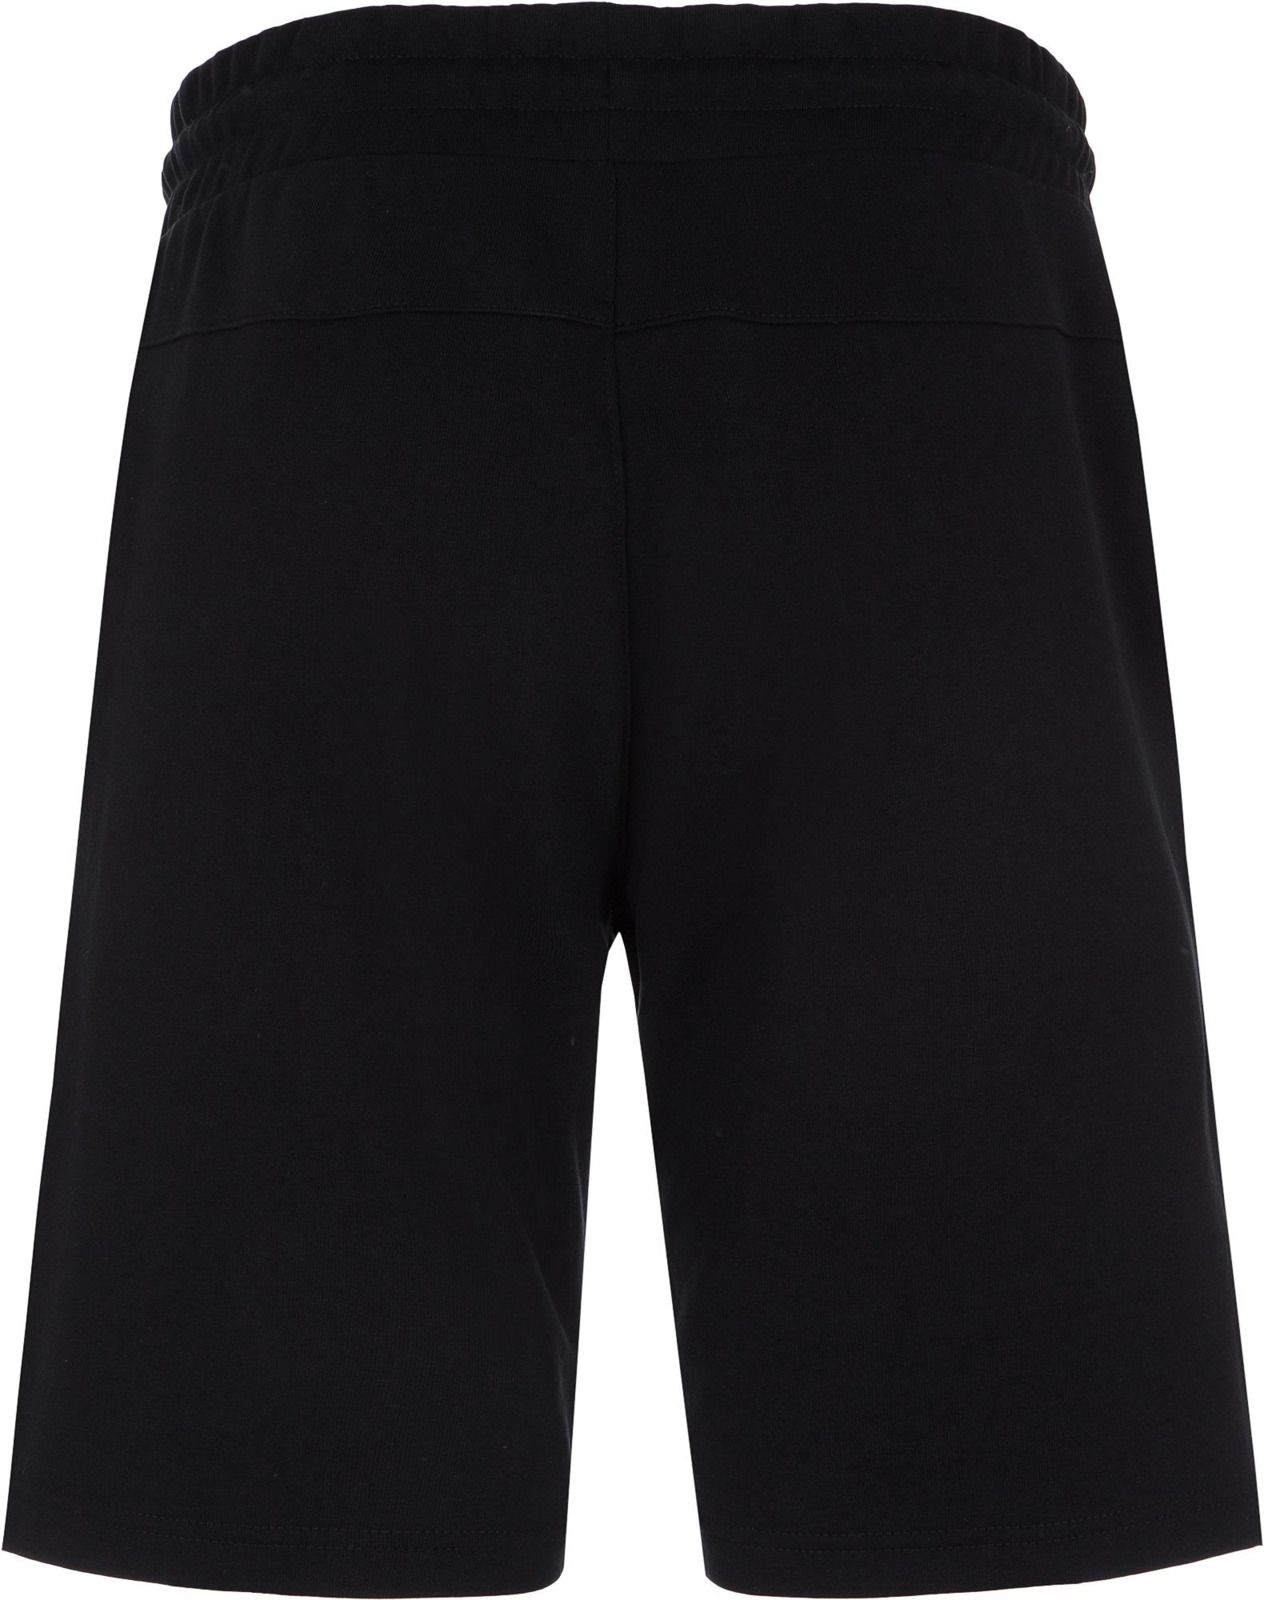   Kappa Men's Shorts, : . 304IDQ0-99.  XL (52)